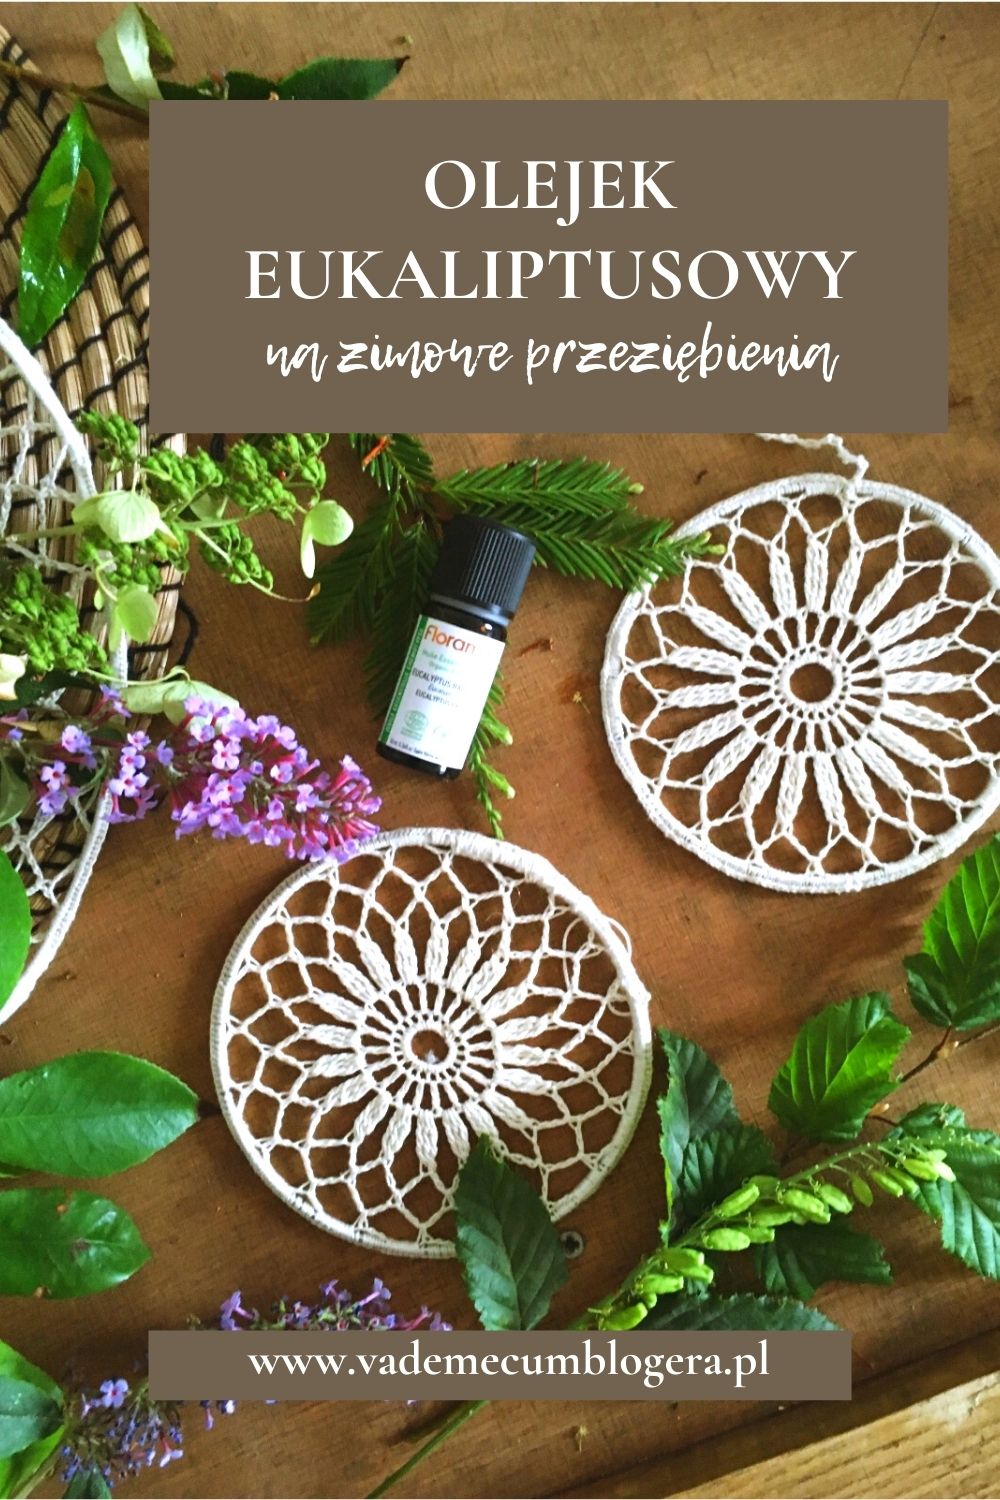 olejek eukaliptusowy działanie lecznicze i zastosowanie